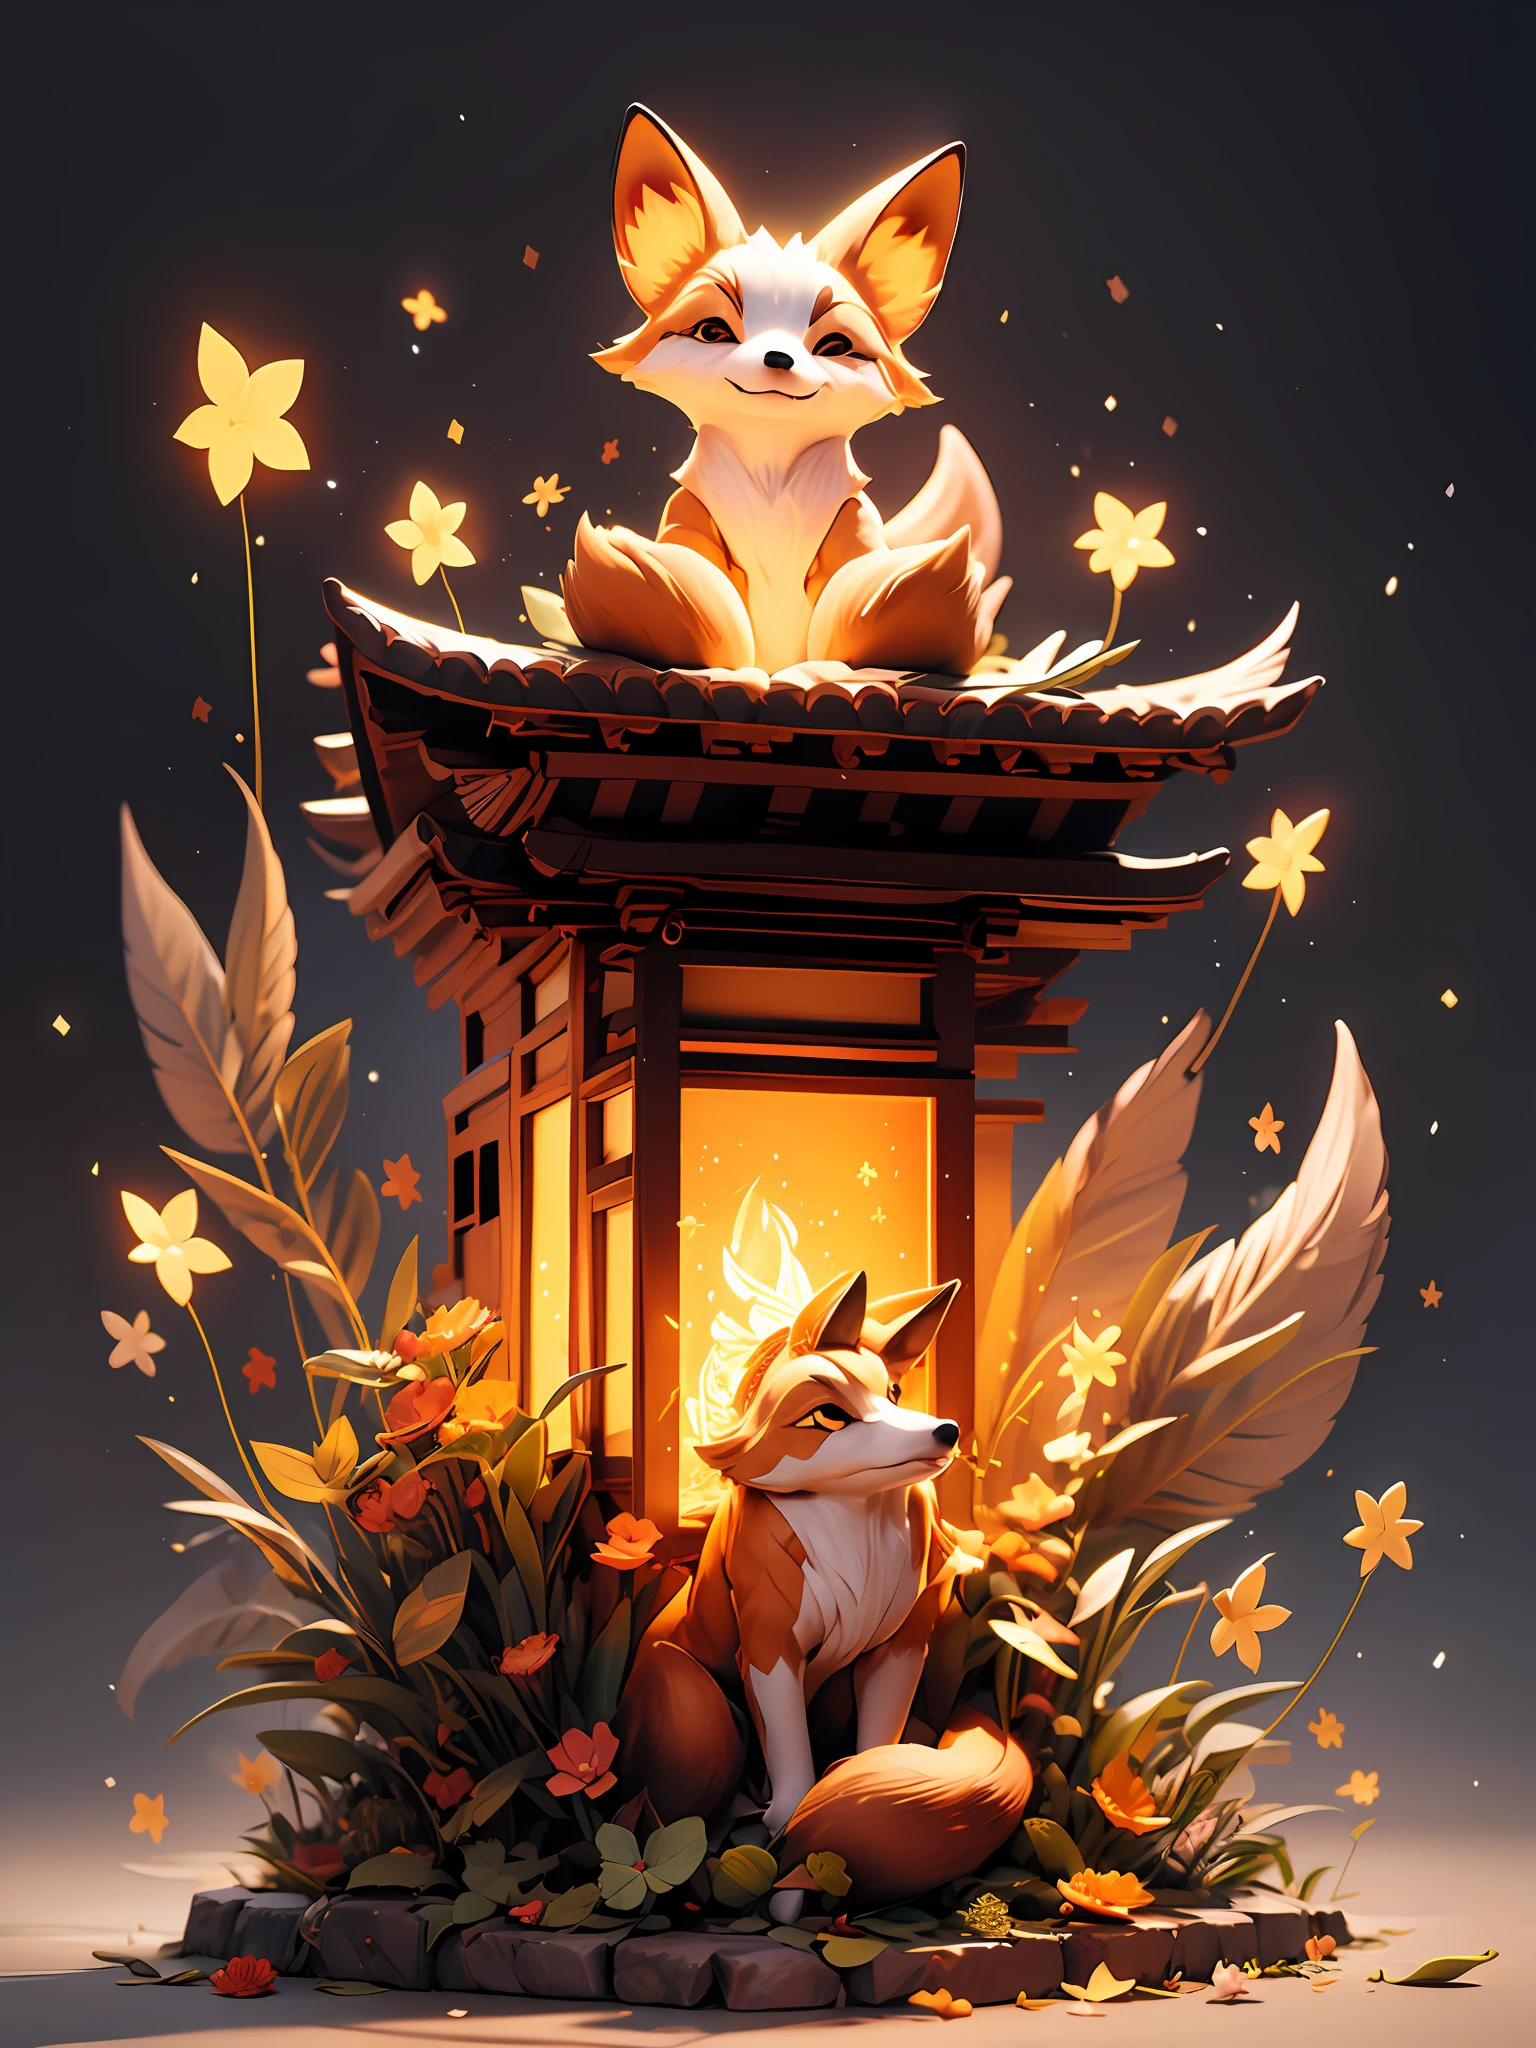 "Scène nocturne enchanteresse avec un temple japonais, un renard lumineux captivant entouré de particules de lumière fascinantes et un effet de lumière époustouflant. Aucun humain présent."